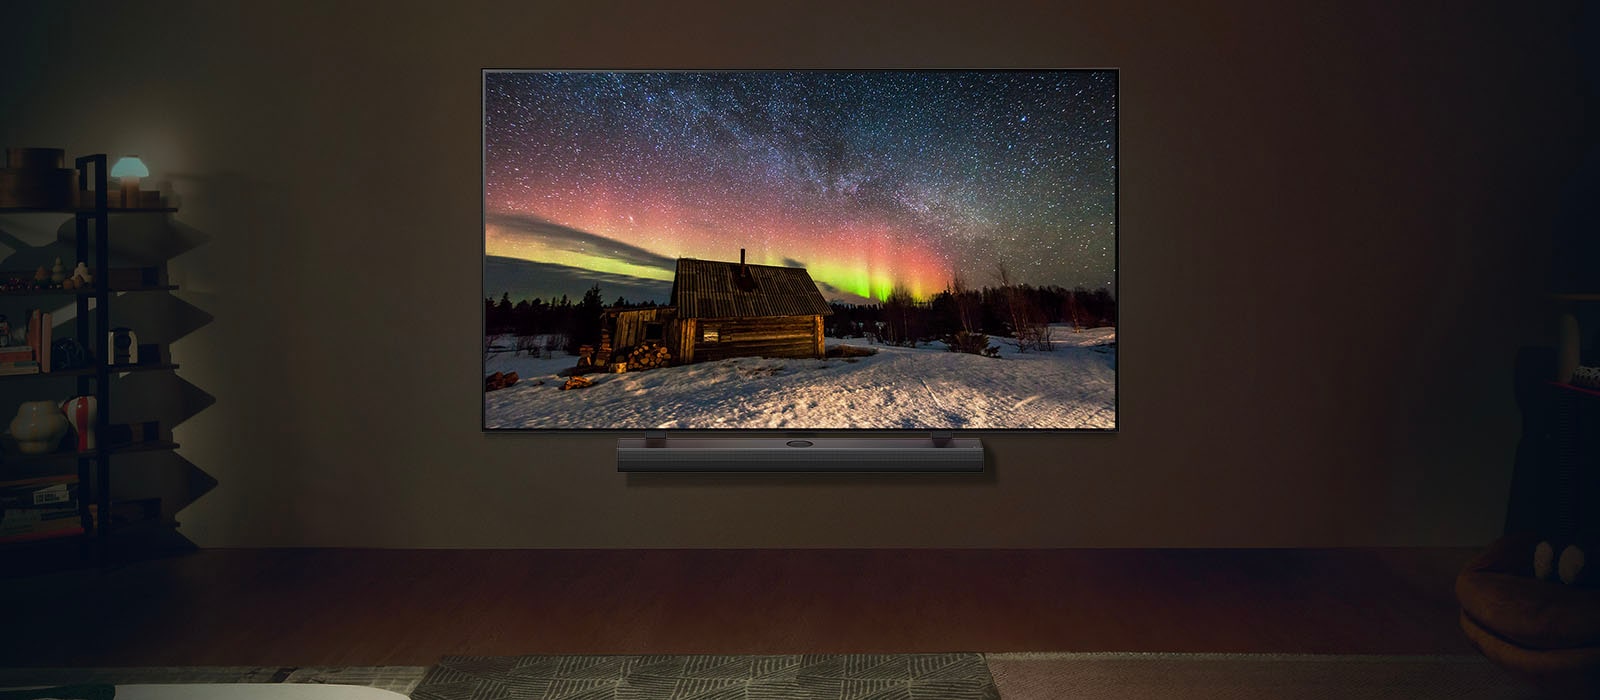  Un LG TV OLED et une barre de son LG dans un salon moderne pendant la nuit. L’écran affiche une image de l’aurore boréale avec une luminosité idéale.